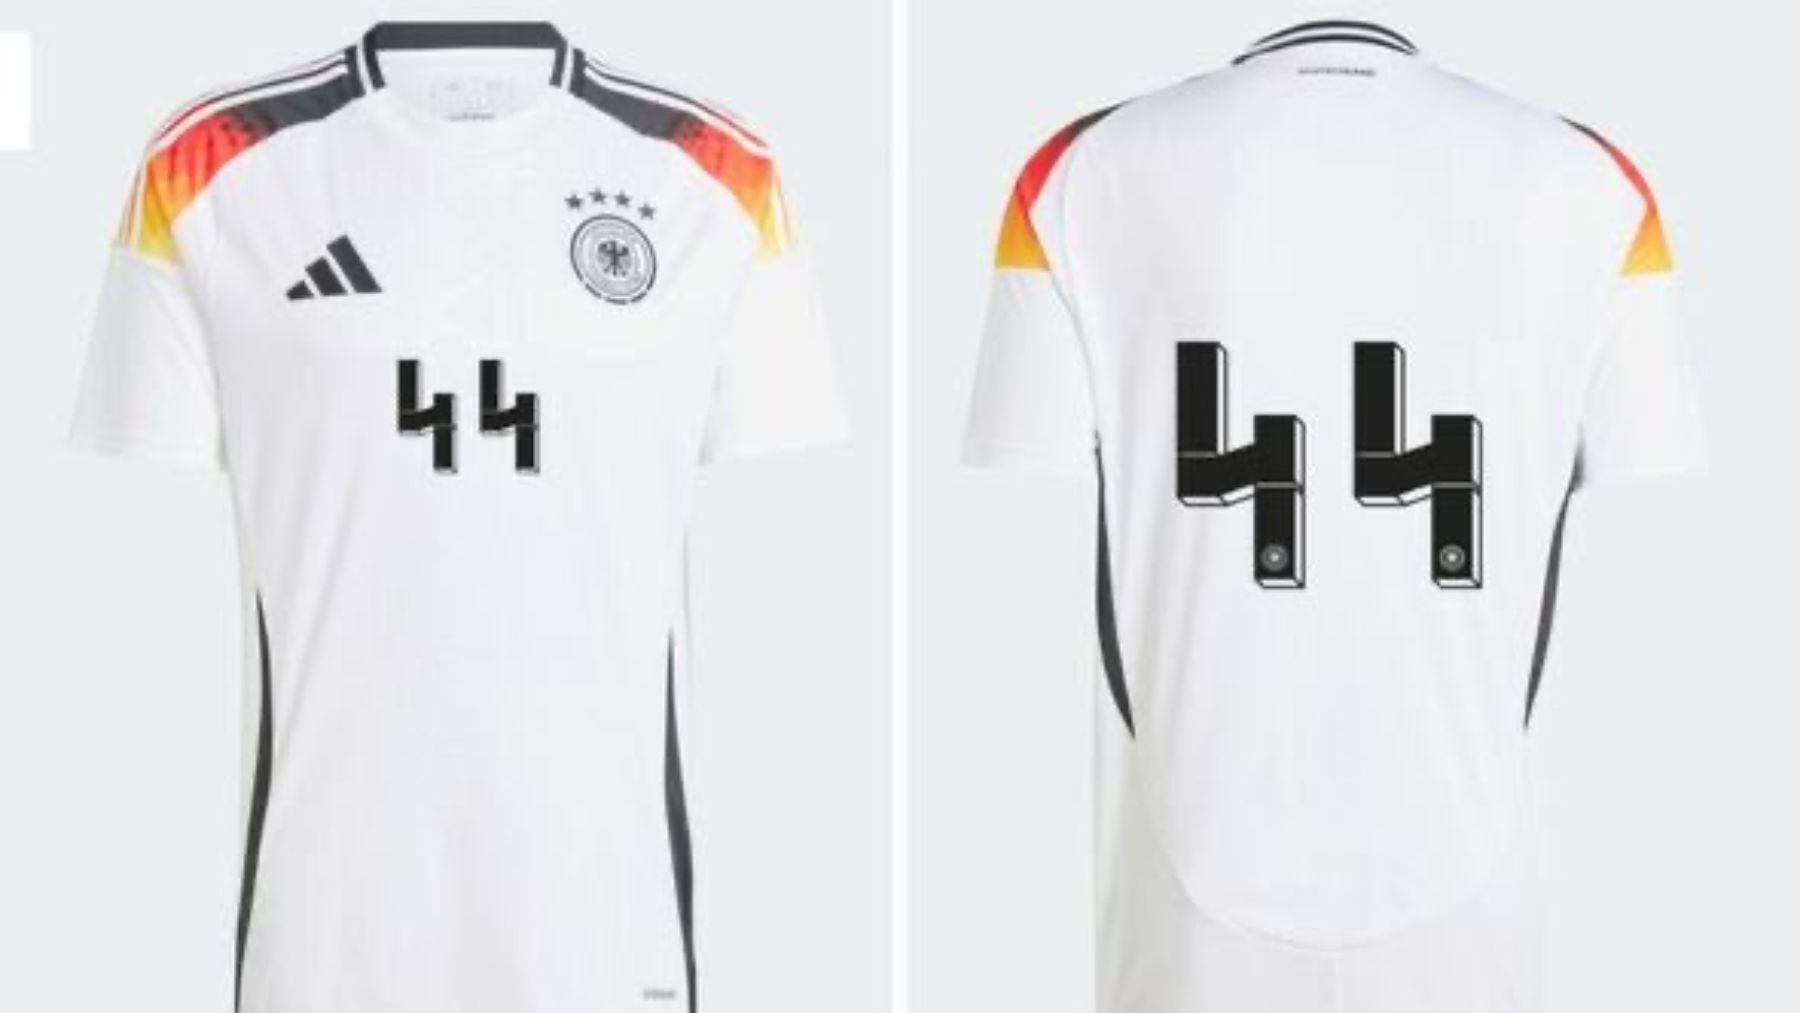 La camiseta de Alemania con el dorsal ’44’.